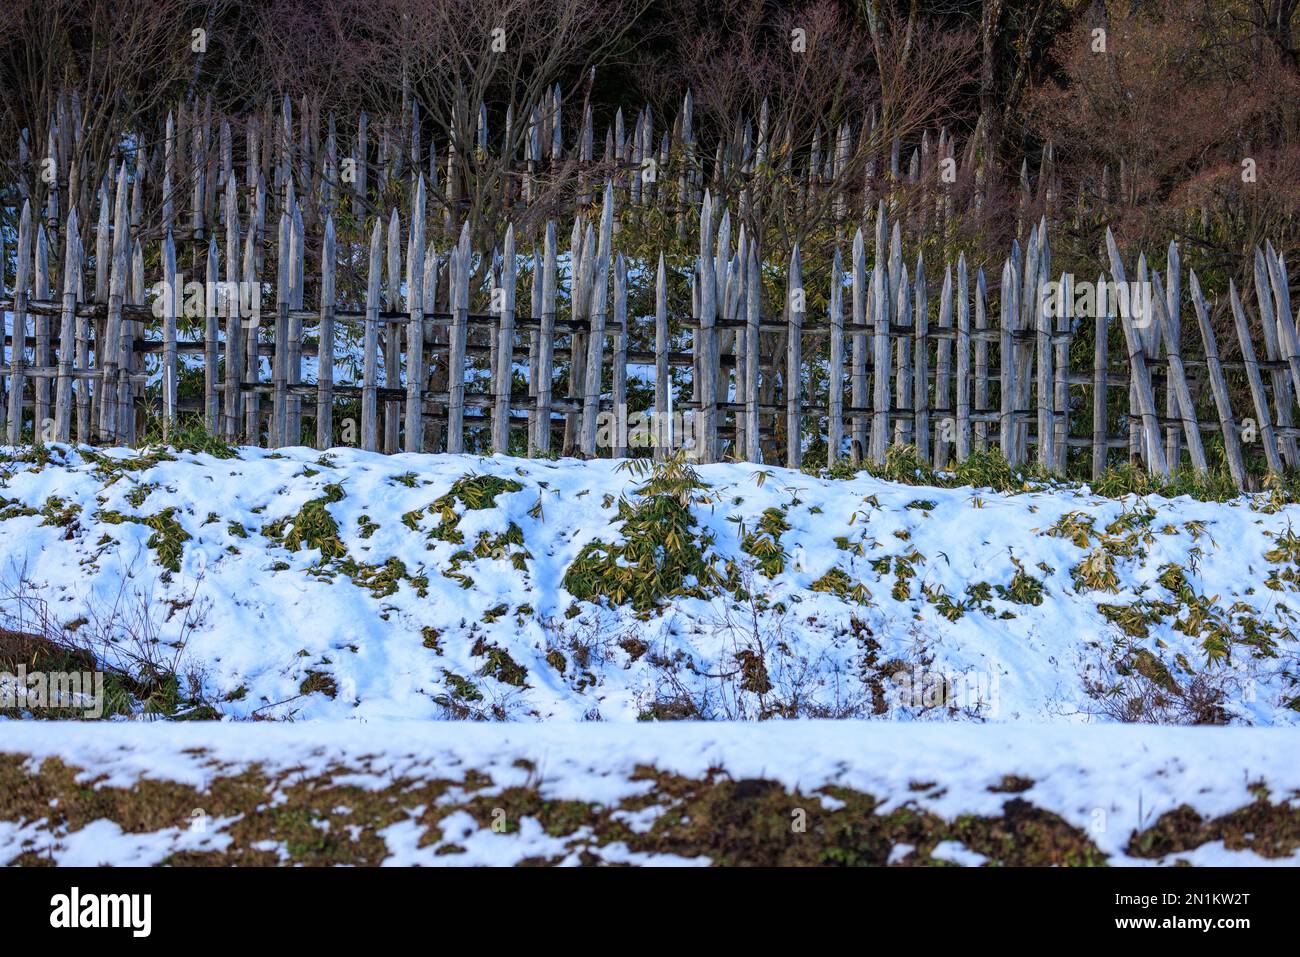 Les piquets en bois affûtés forment un périmètre défensif sur une colline enneigée Banque D'Images